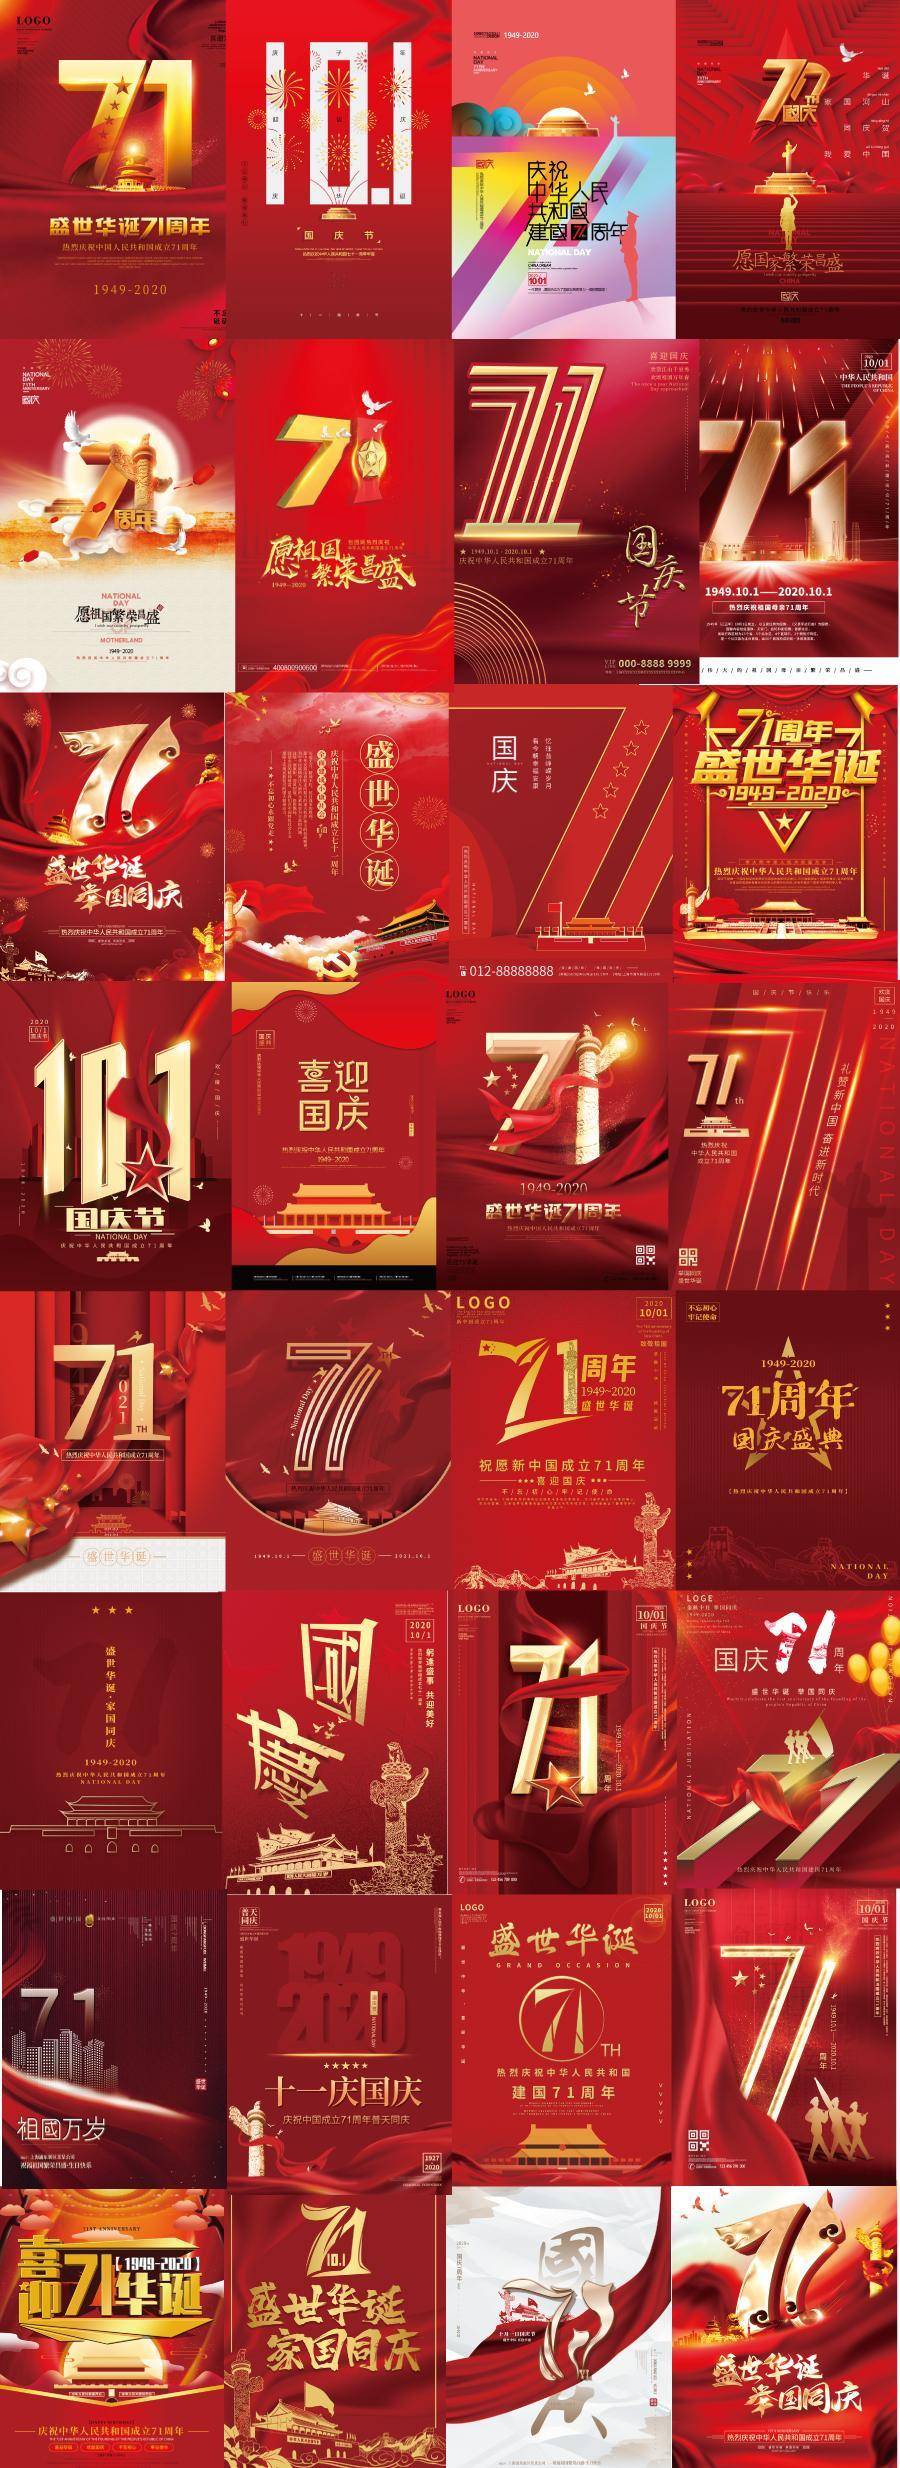 96款红色大气2020年10月1日71周年国庆节活动宣传海报展板PSD素材